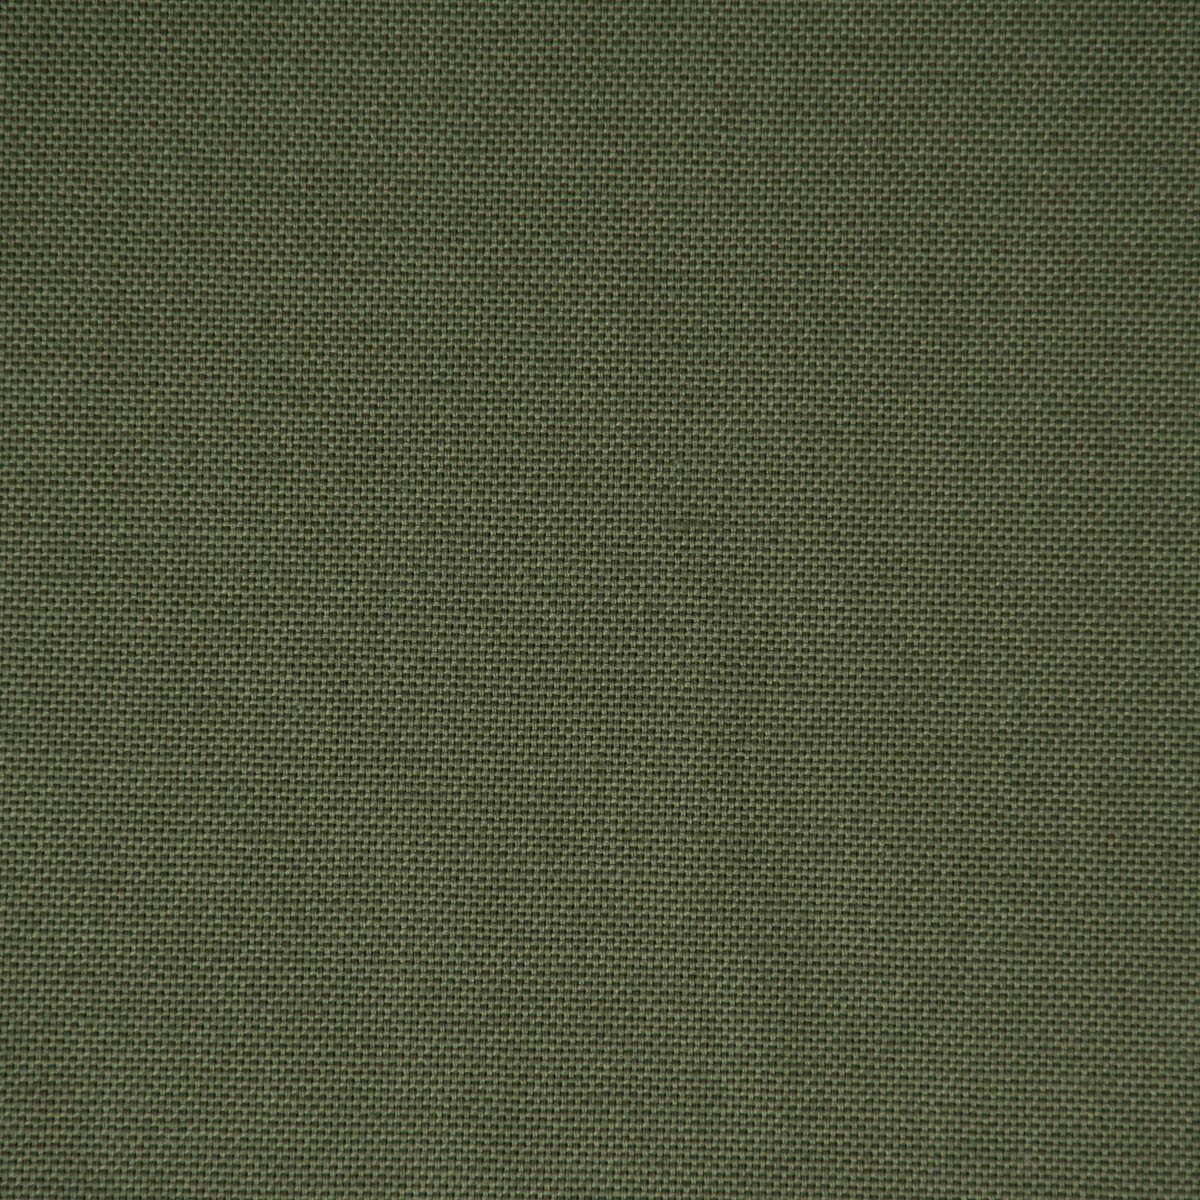 SCHÖNER LEBEN. aus in LEBEN., div. olivgrün SCHÖNER Tischdecke uni handmade von Größen Canvas Tischdecke